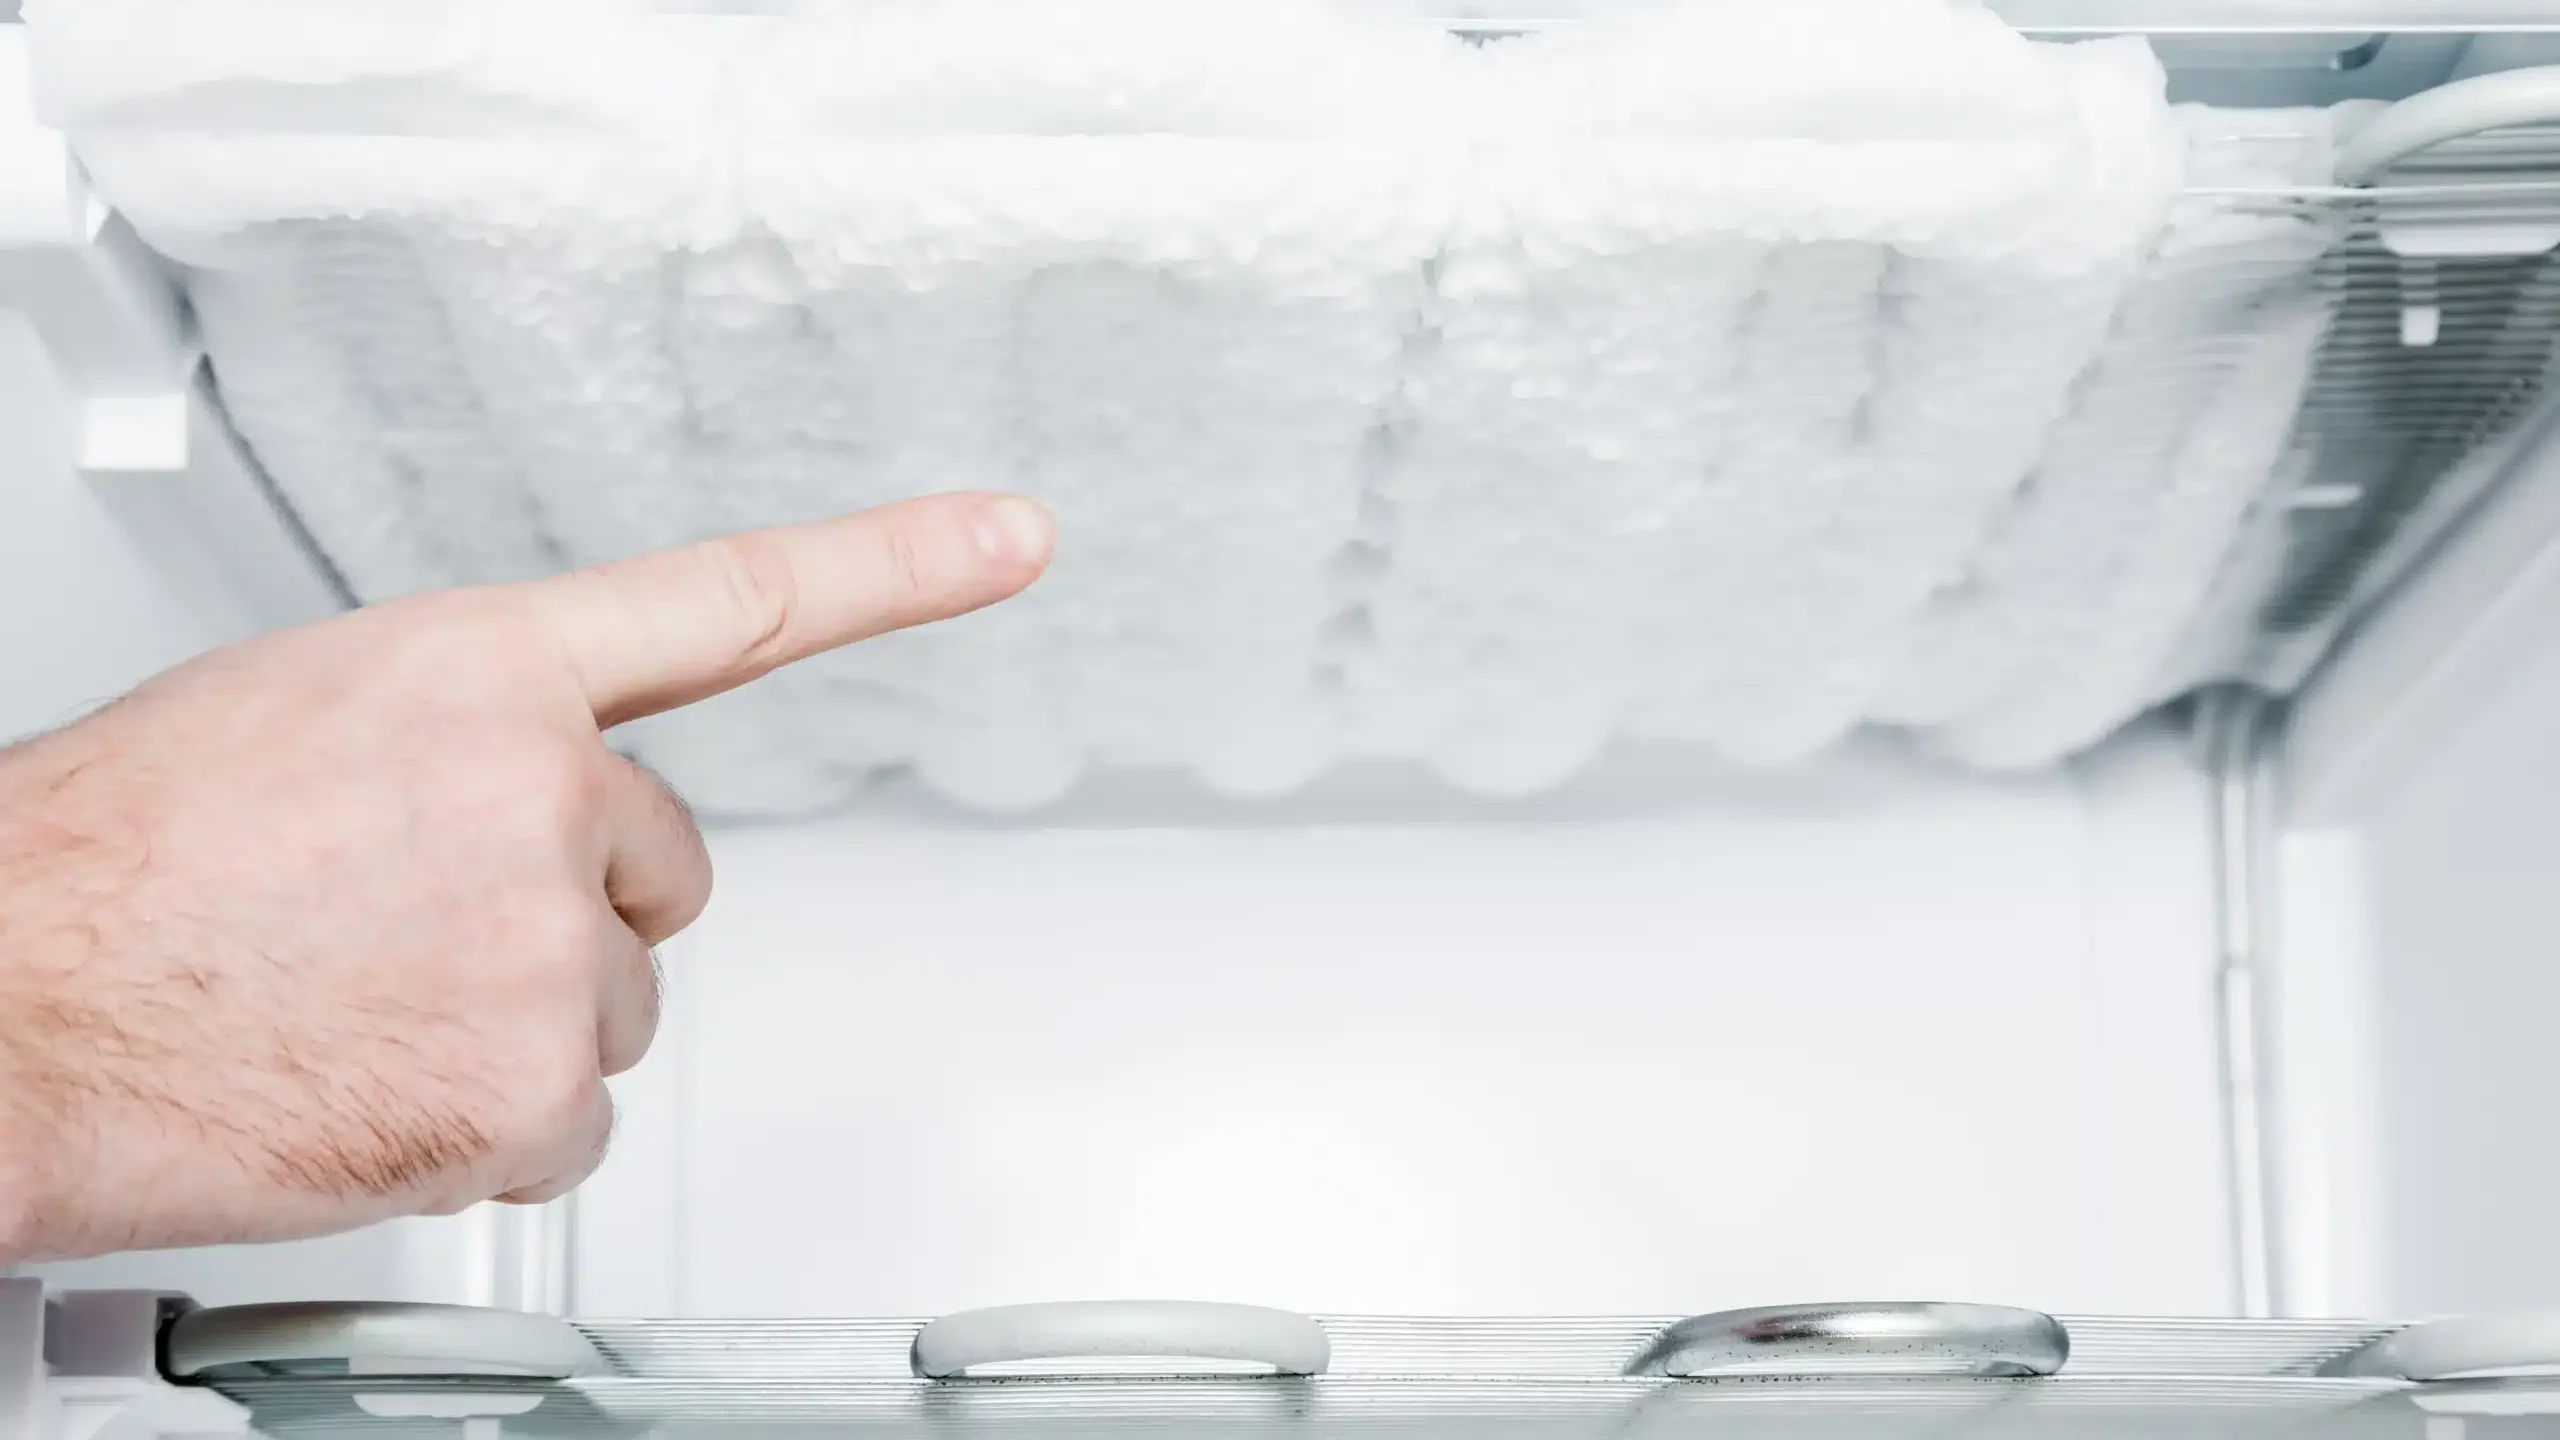 Szron i lód nagromadzony na elemencie chłodzącym lodówki bez funkcji no frost